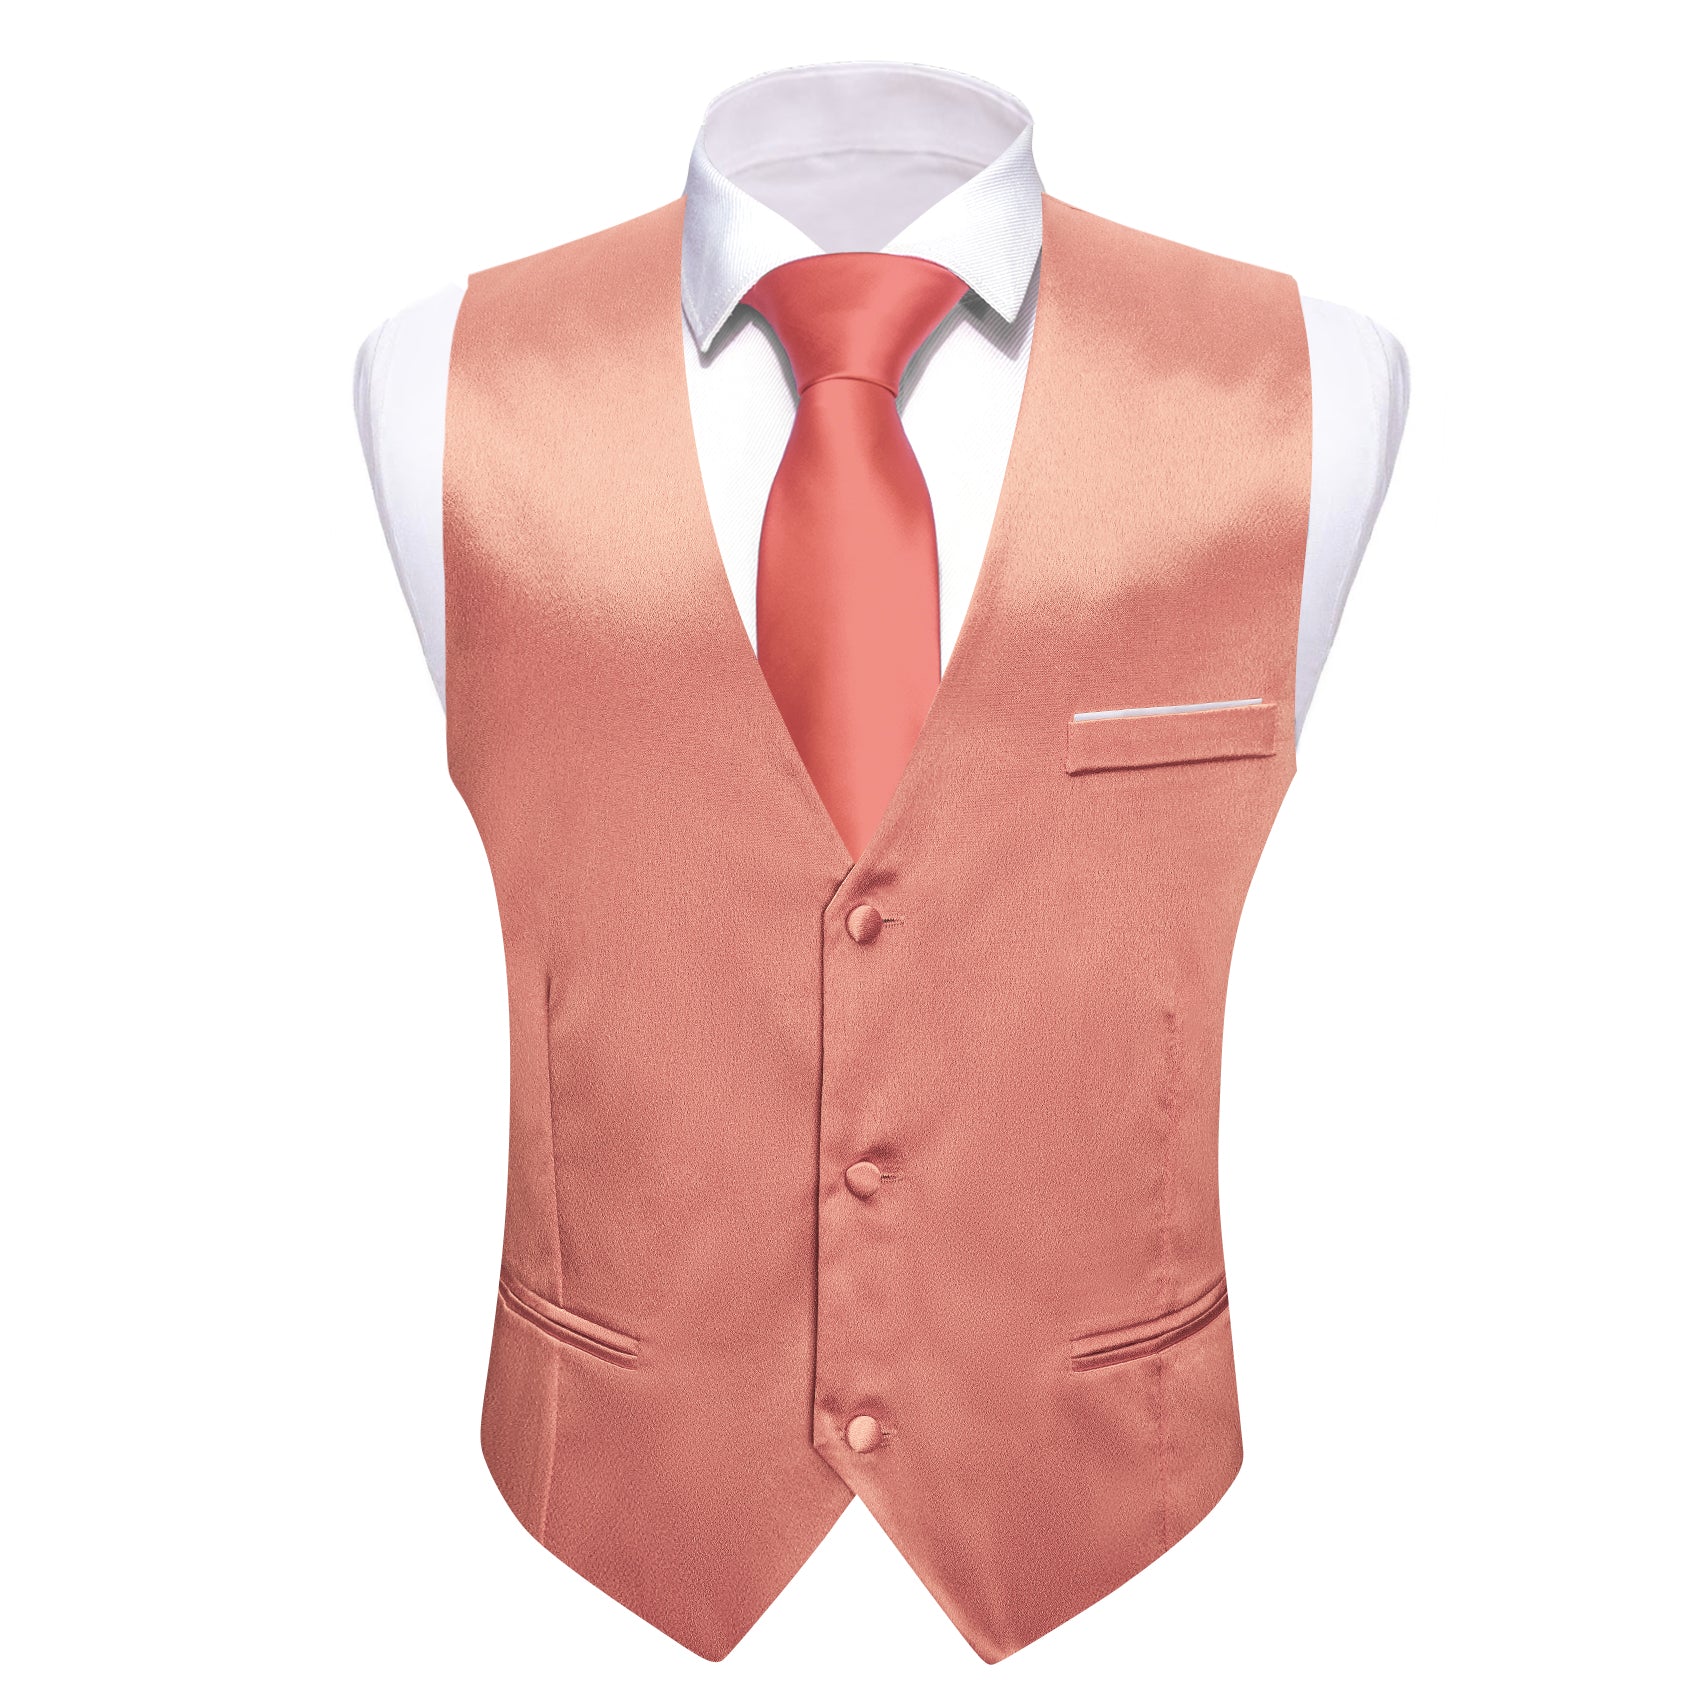 Barry.wang Vest for Men Solid Light Coral Silk Vest Waistcoat Suit Set